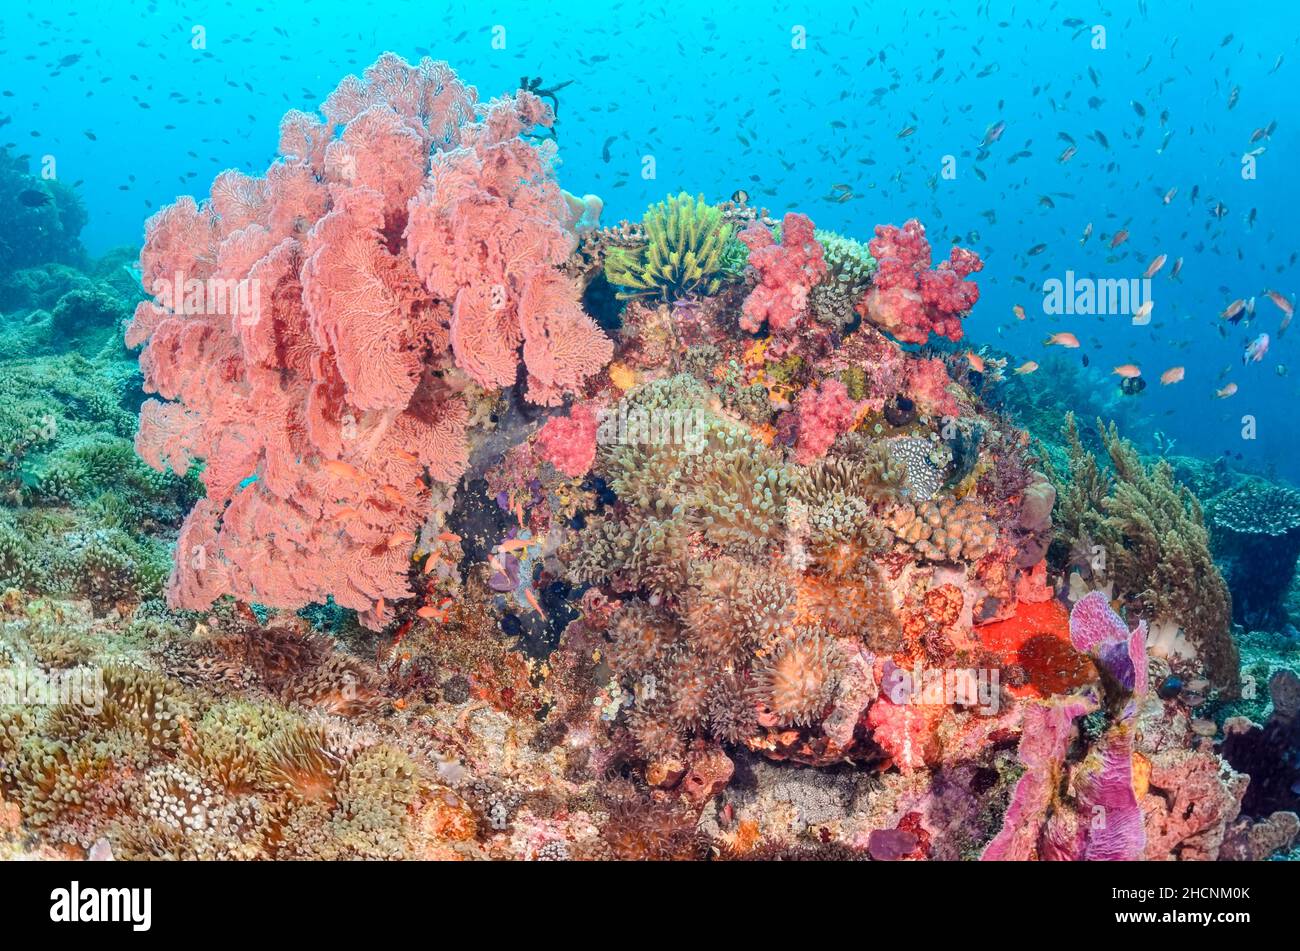 Un arrecife de coral sano con un gran ventilador de mar, Melithaea sp., y anémonas, Alor, Nusa Tenggara, Indonesia, Pacífico Foto de stock